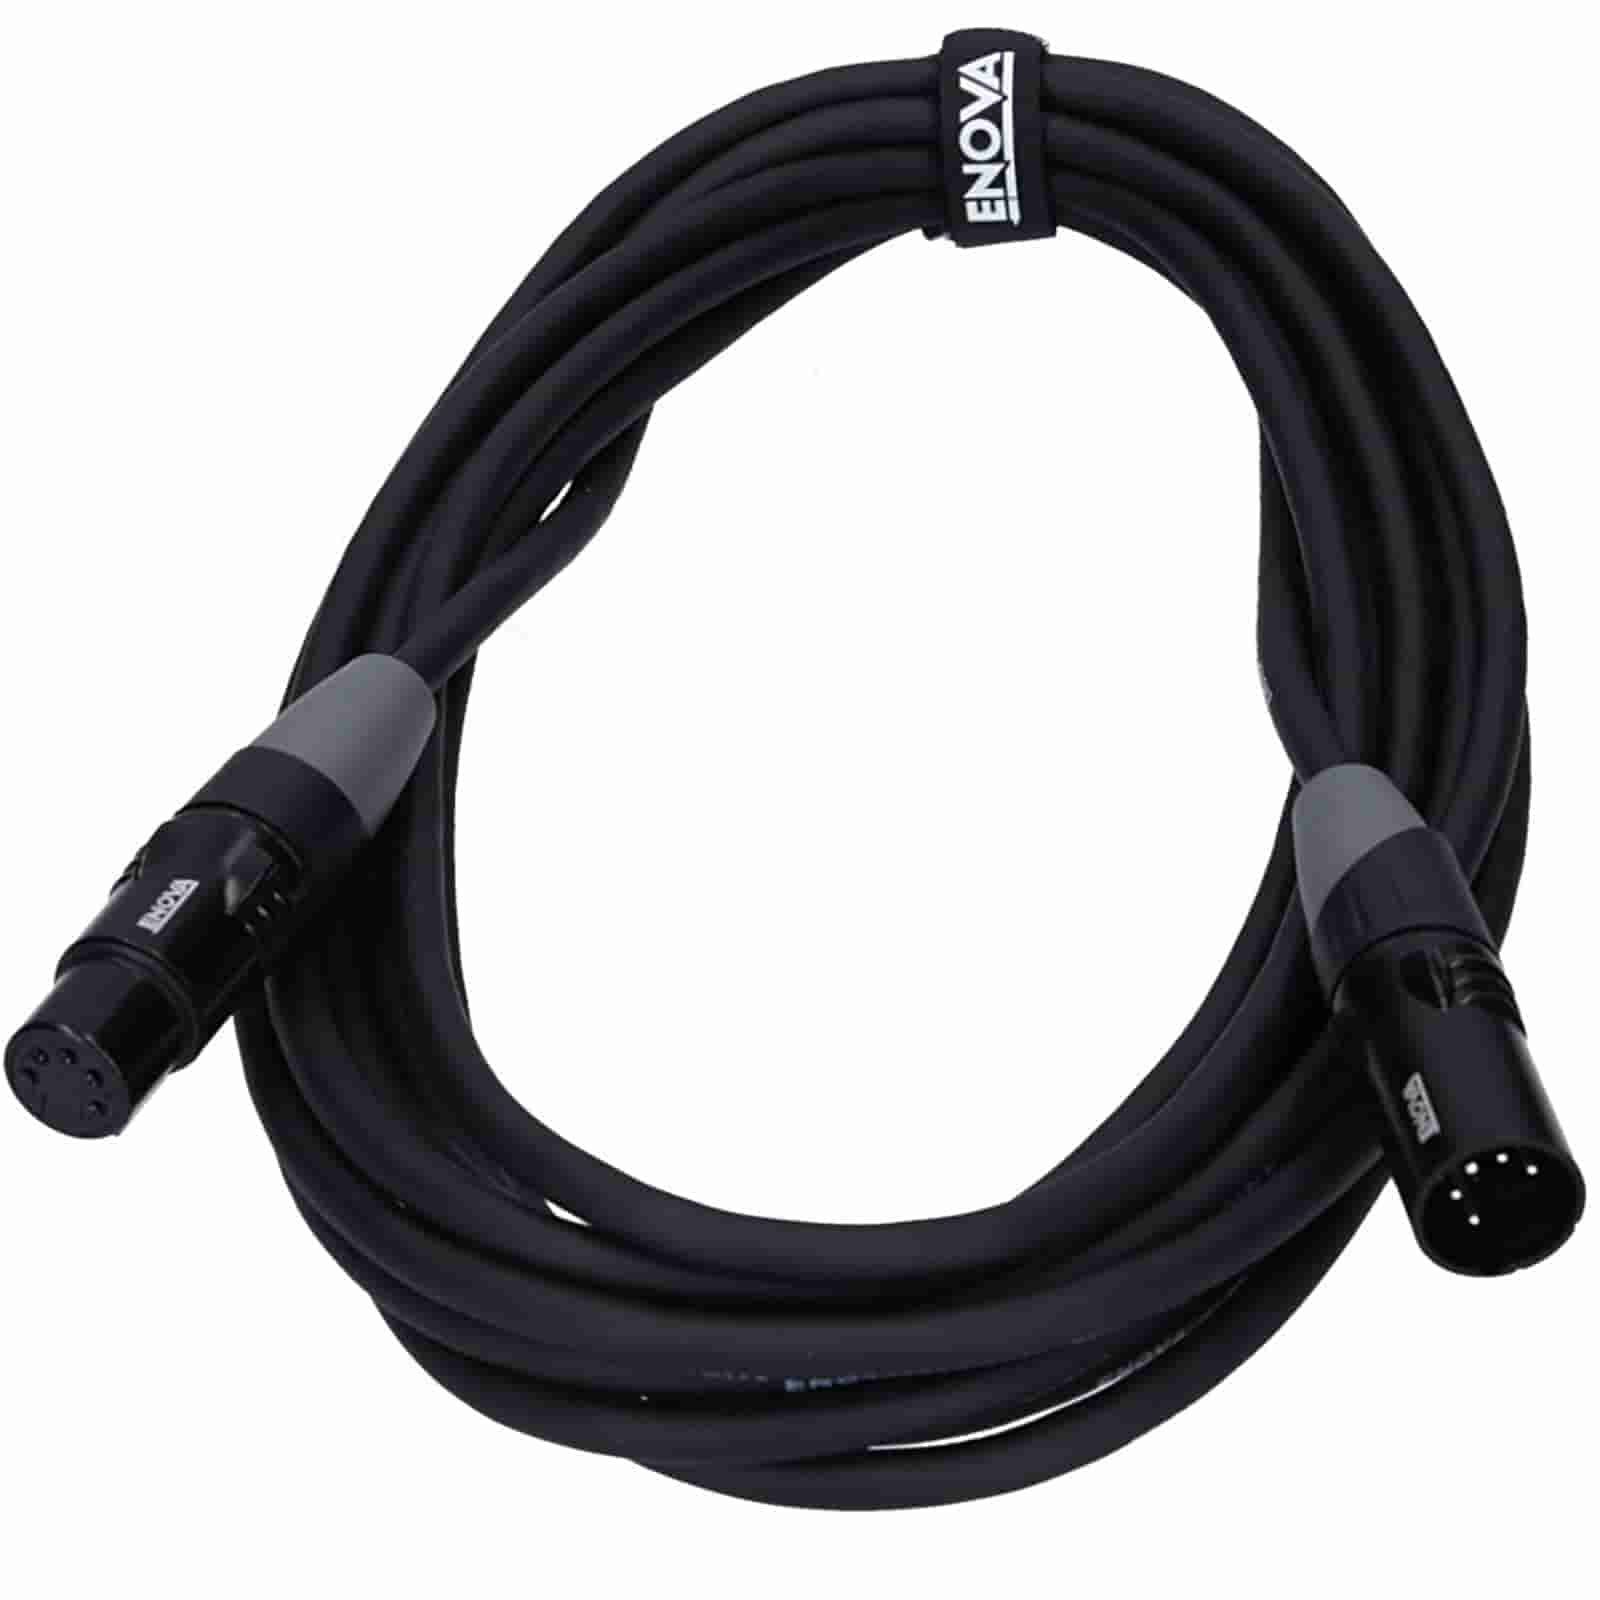 XRL Female Male Verlängerungs kabel schwarz 6,3 mm länge 20 meter 